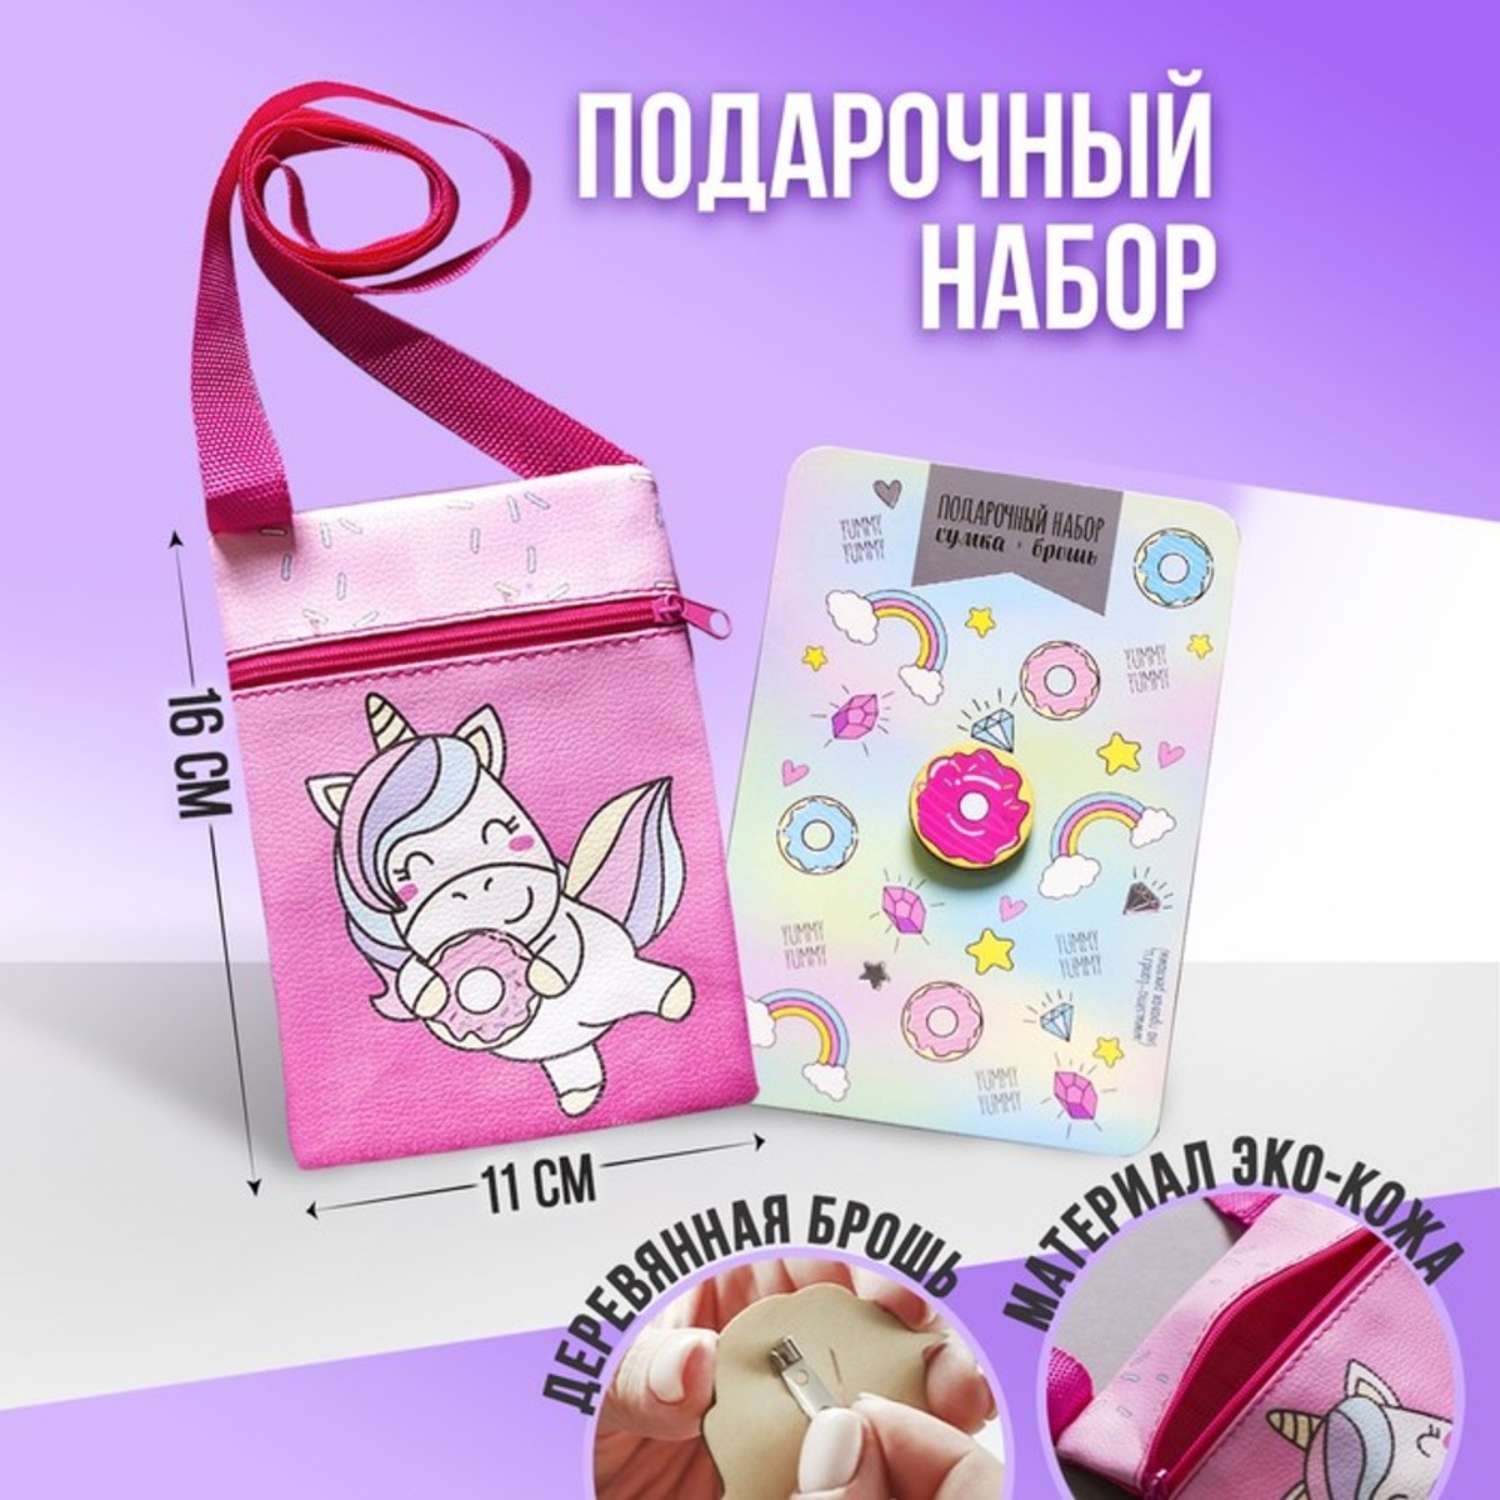 Подарочный набор NAZAMOK сумка и брошь цвет розовый «Единорог» - фото 1